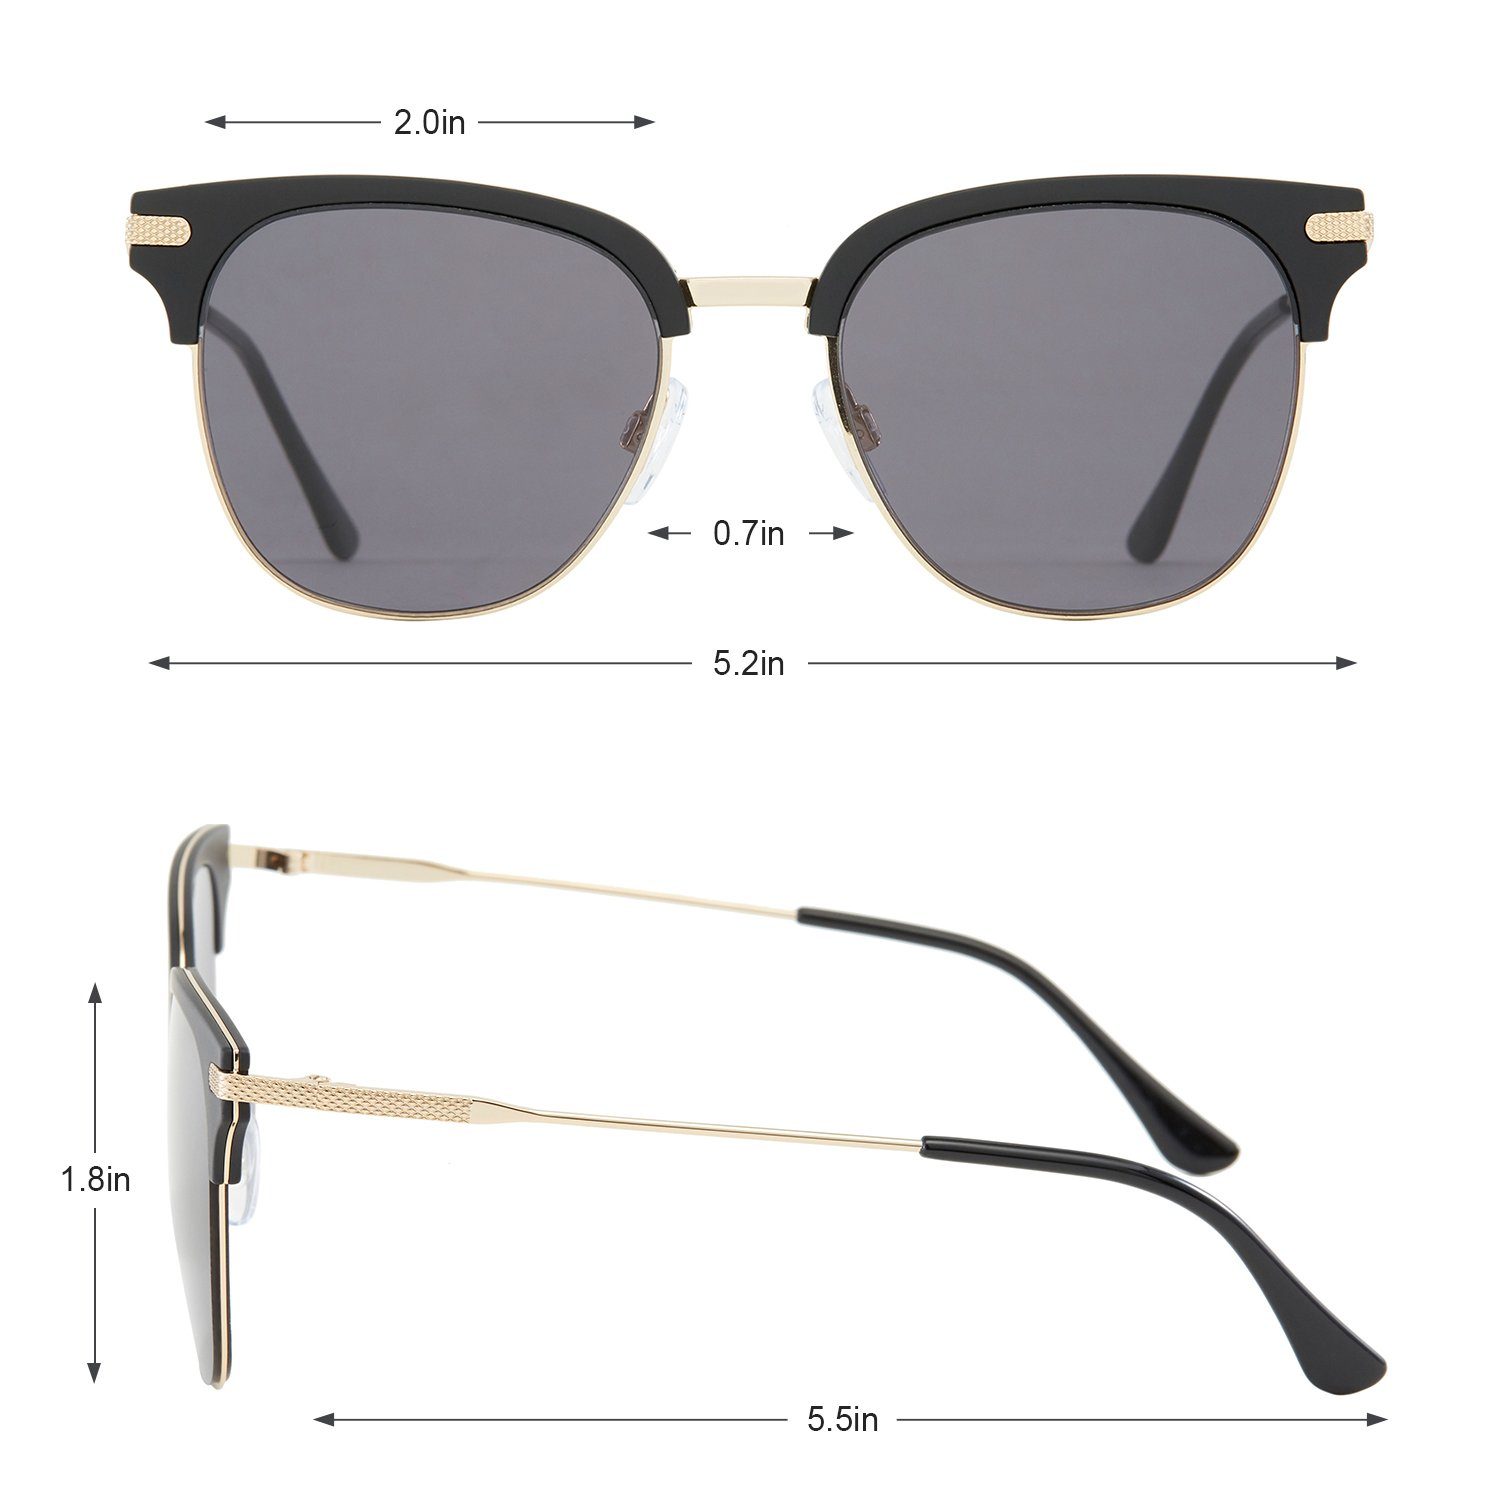 UV400-Schutz Verlaufsglas Sonnenbrille Elegear Grau 100% Sonnenbrille Damen Retro